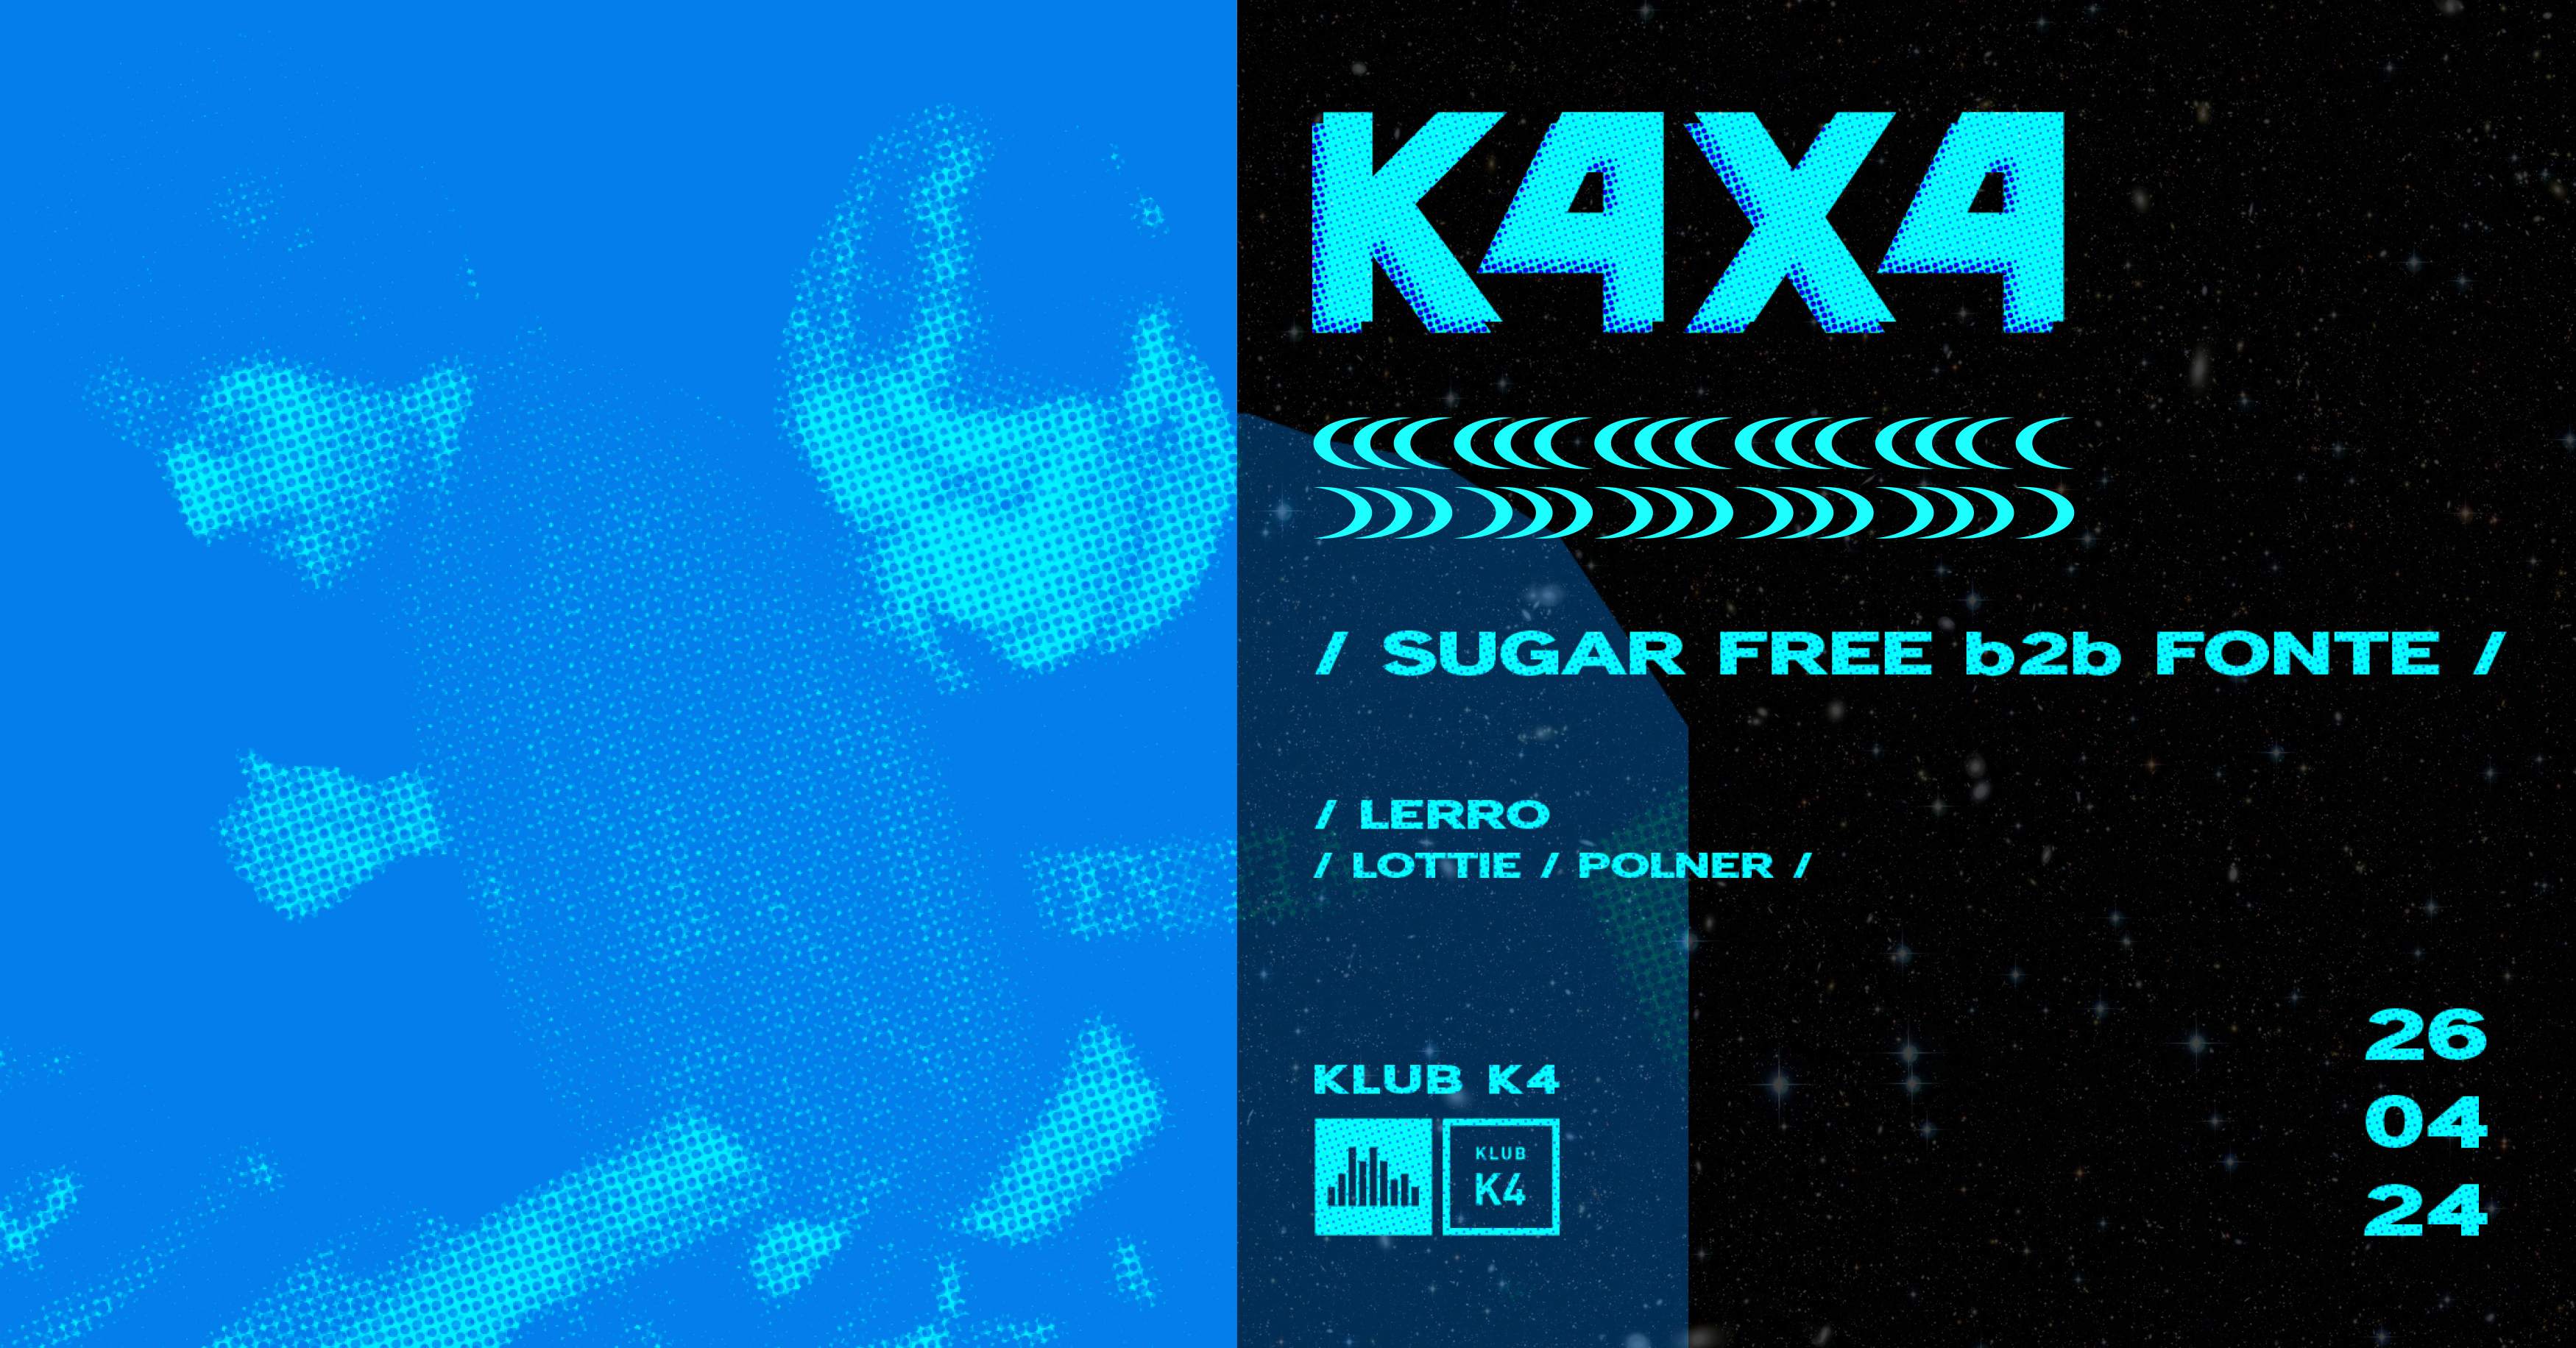 K4X4 with Sugar Free b2b Fonte - Página trasera